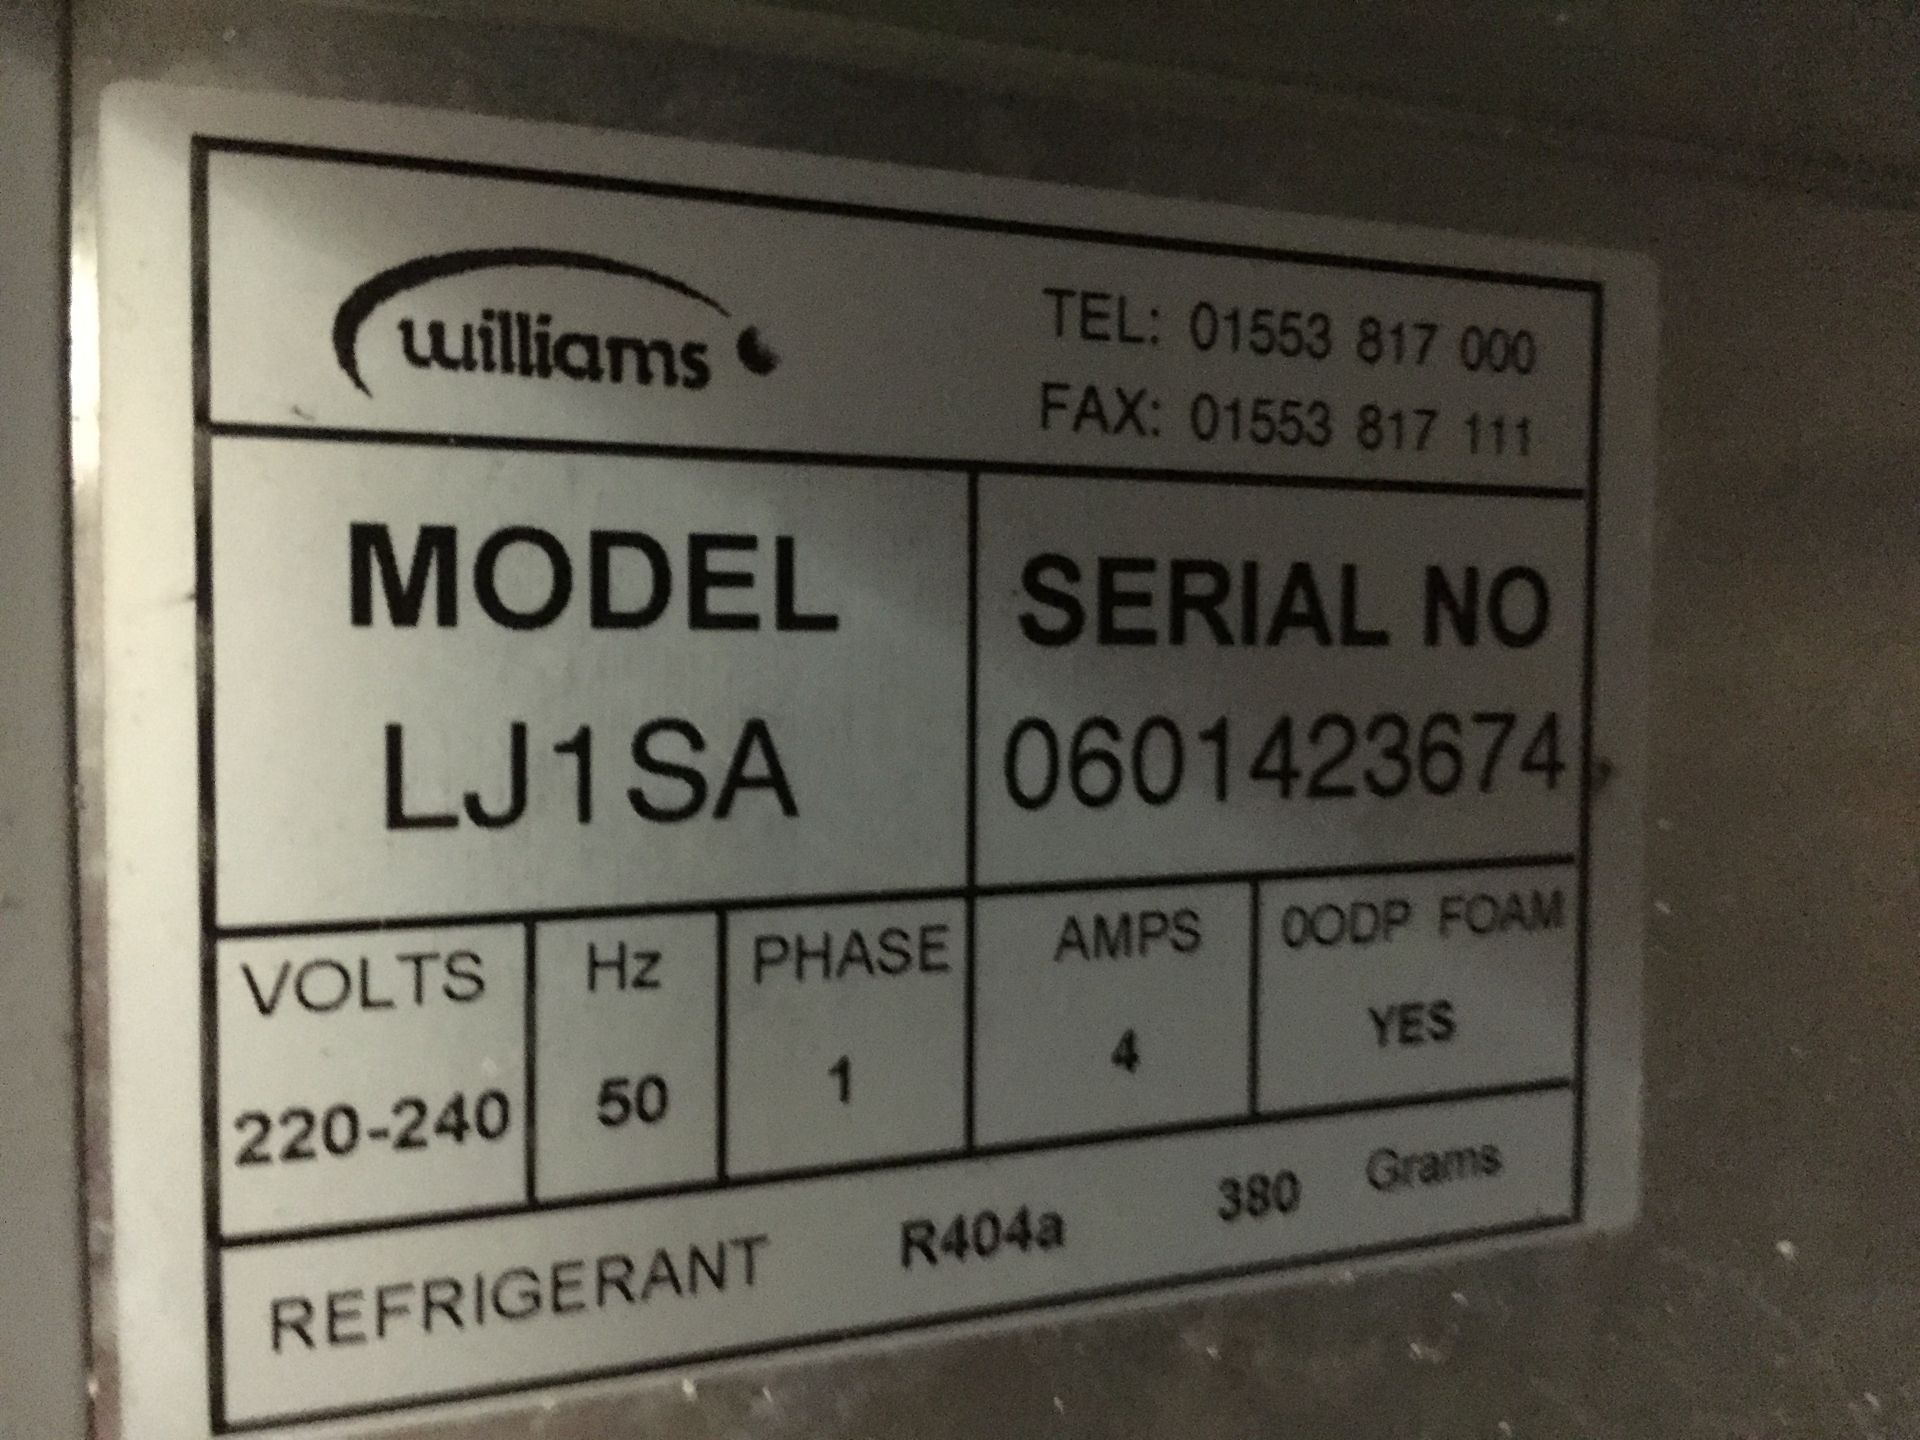 1 x Williams Jade LJ1SA Stainless Steel Single Door Upright Freezer - Features Self Closing Door, - Bild 2 aus 3